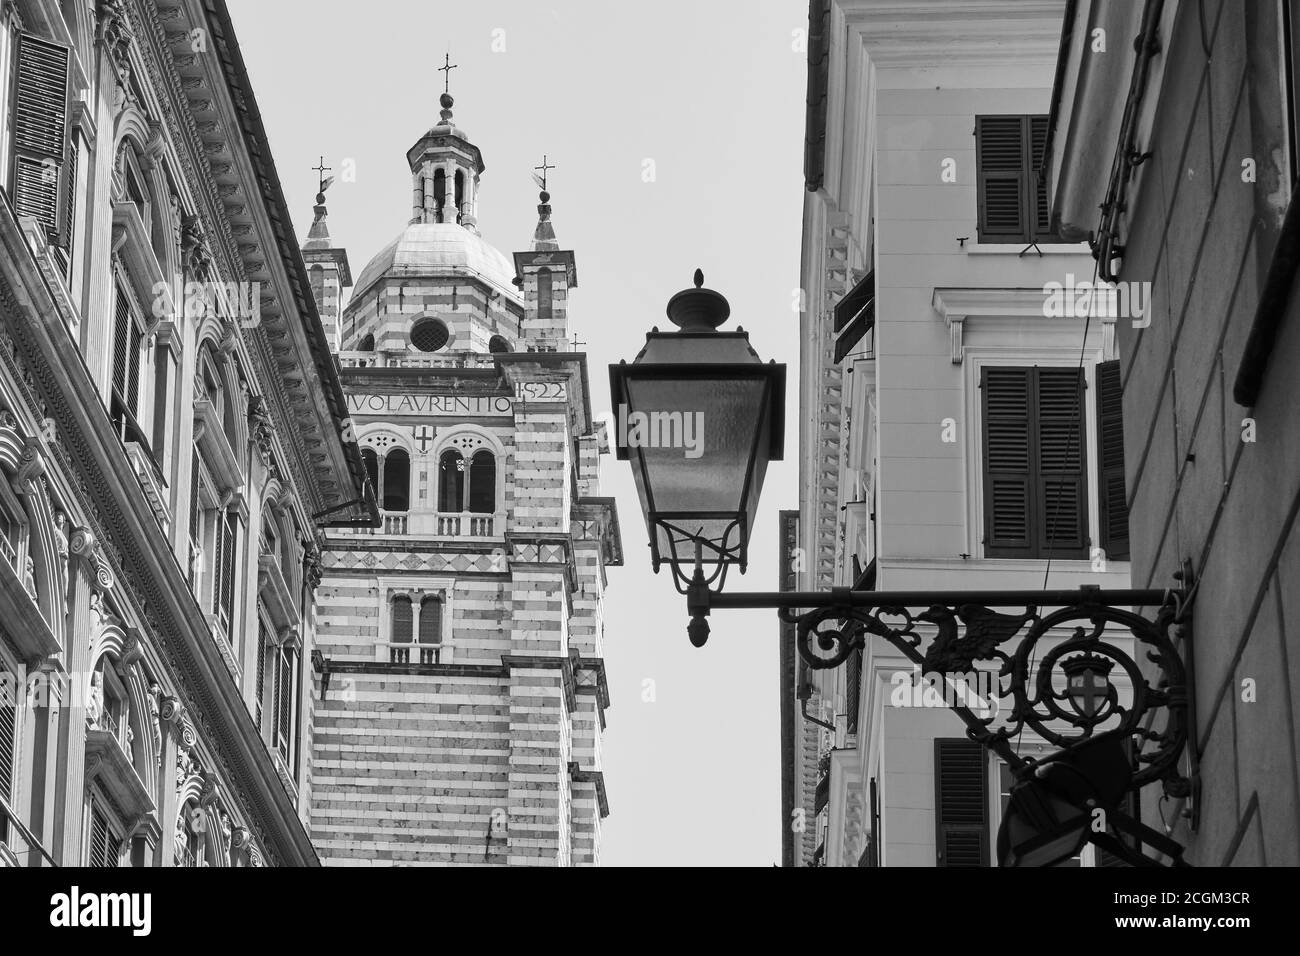 Cathédrale San Lorenzo et lumière de rue rétro, Gênes (Genova), Italie. Photographie urbaine en noir et blanc Banque D'Images